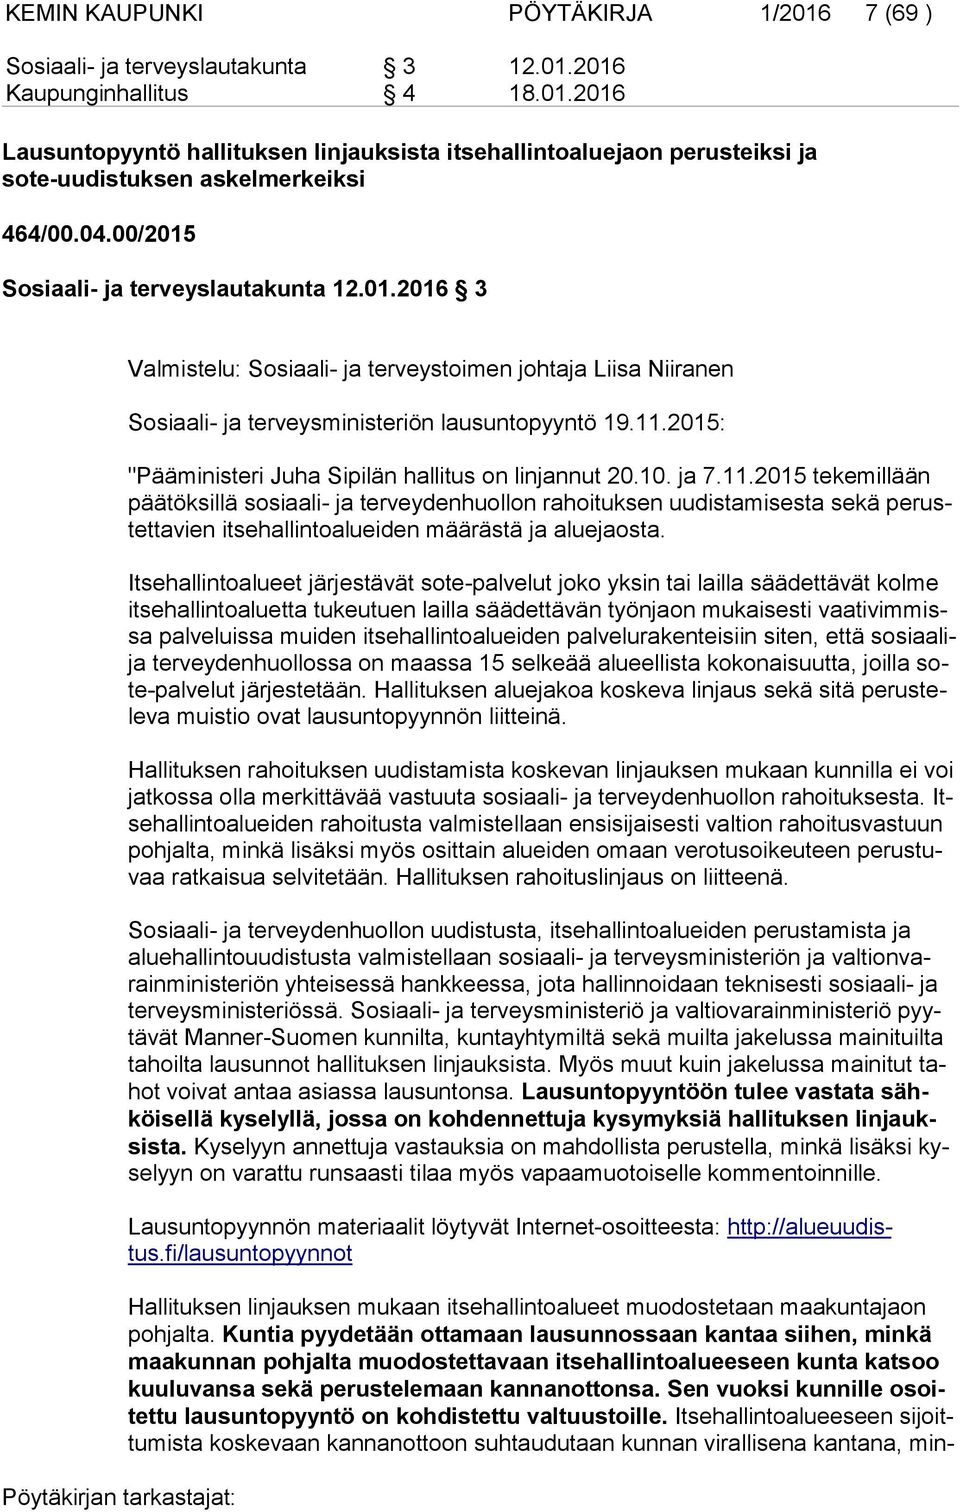 2015: "Pääministeri Juha Sipilän hallitus on linjannut 20.10. ja 7.11.